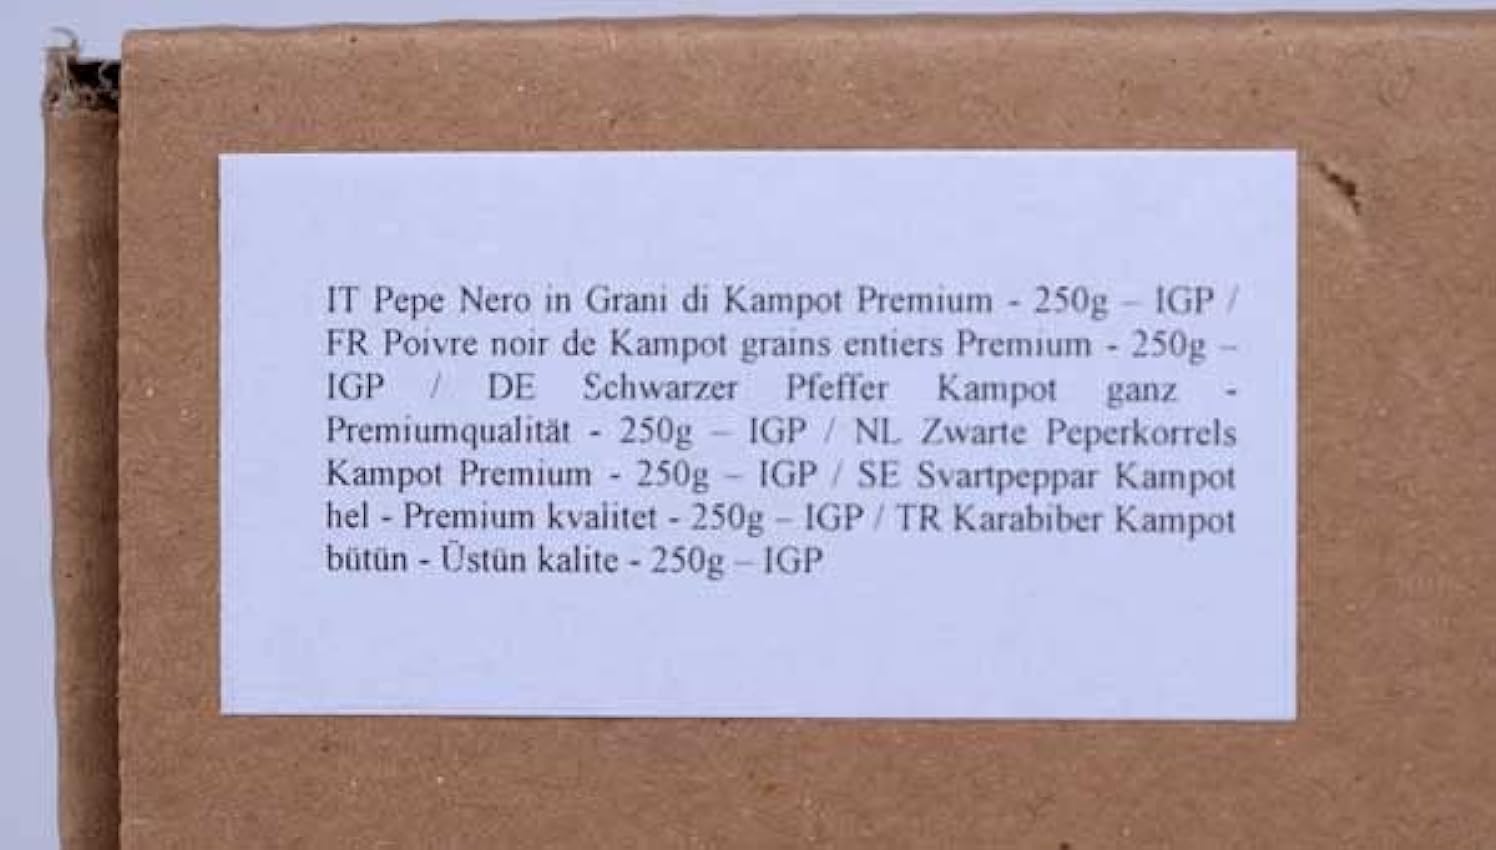 Pimienta Negra Kampot Premium en grano - 250g - IGP l2HA9N3j